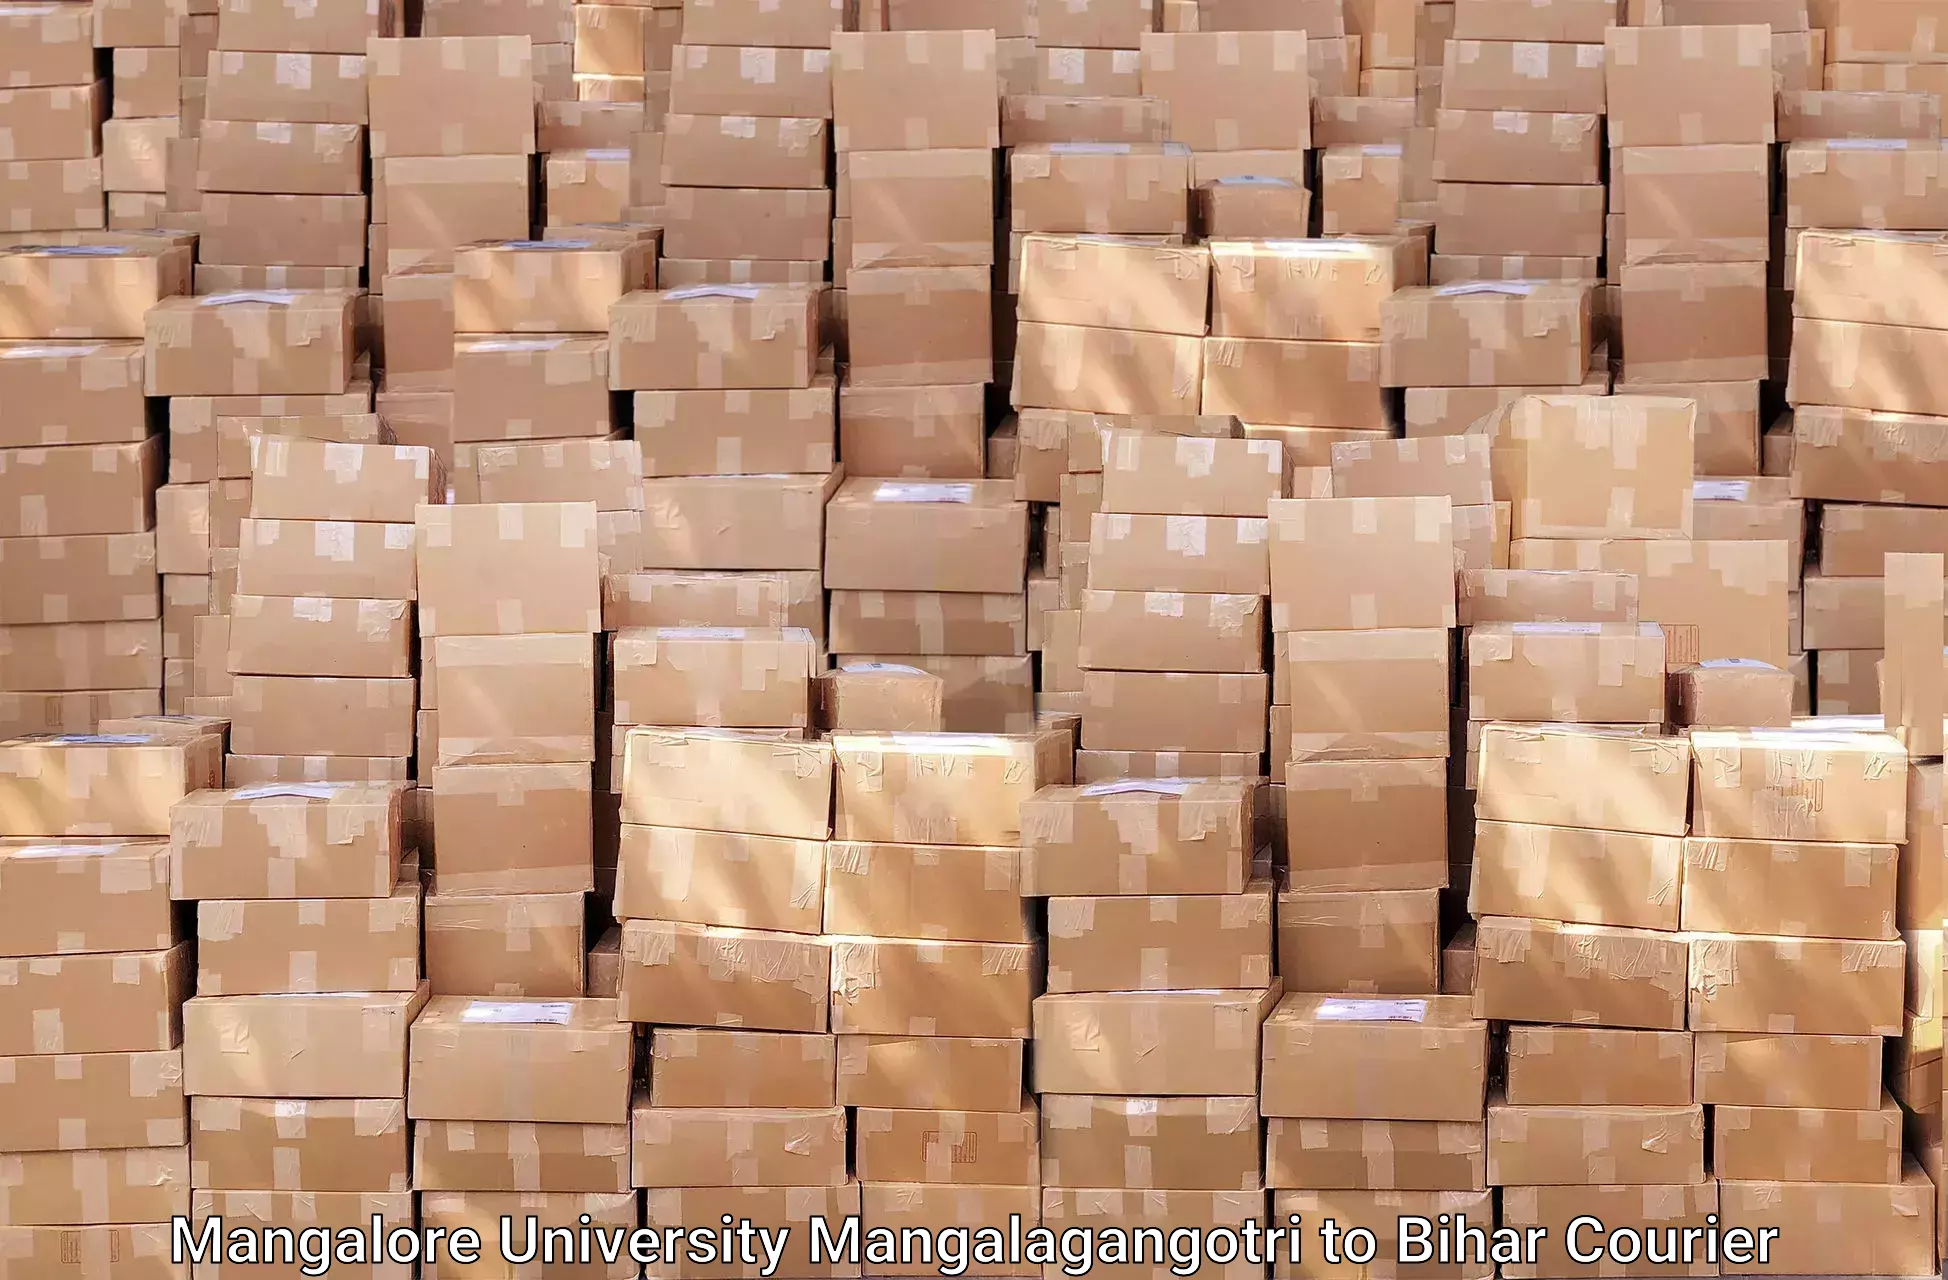 Household moving experts Mangalore University Mangalagangotri to Bihar